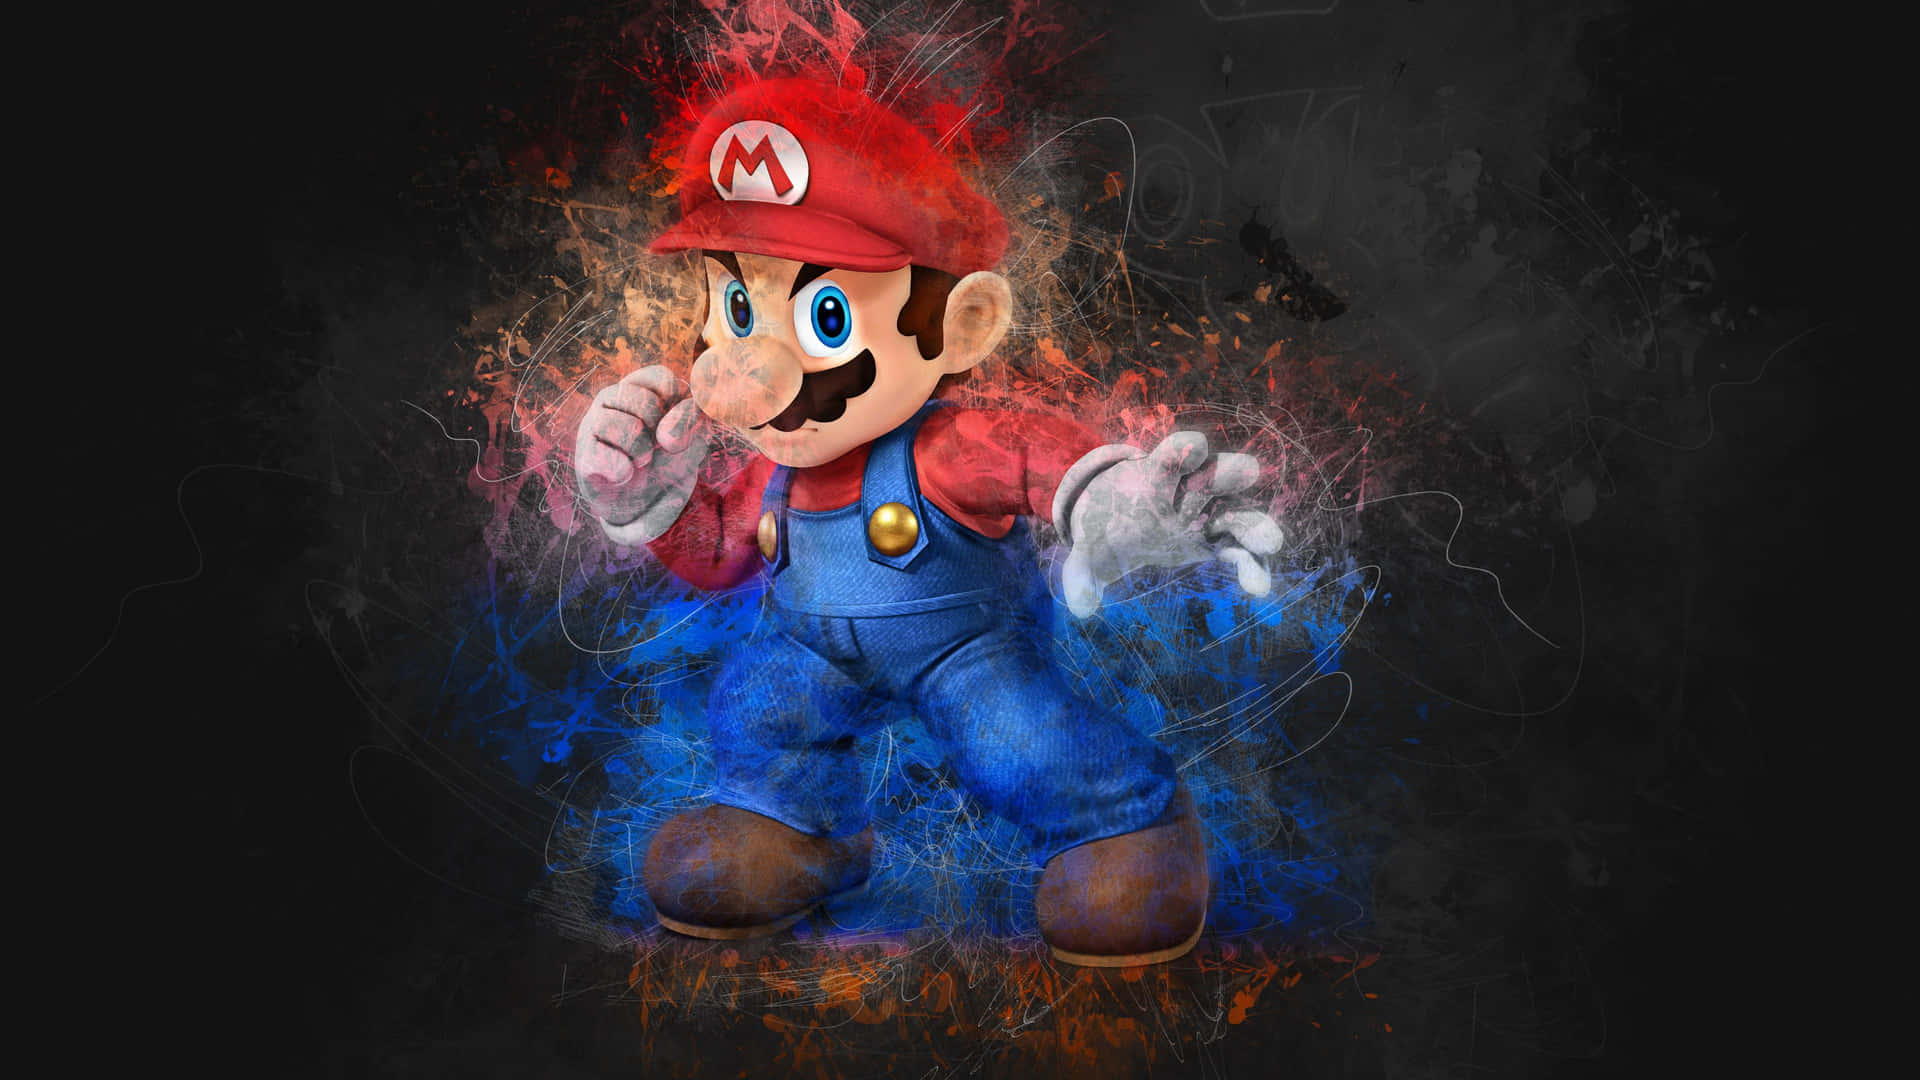 Gem universet med Super Mario Galaxy tapet. Wallpaper